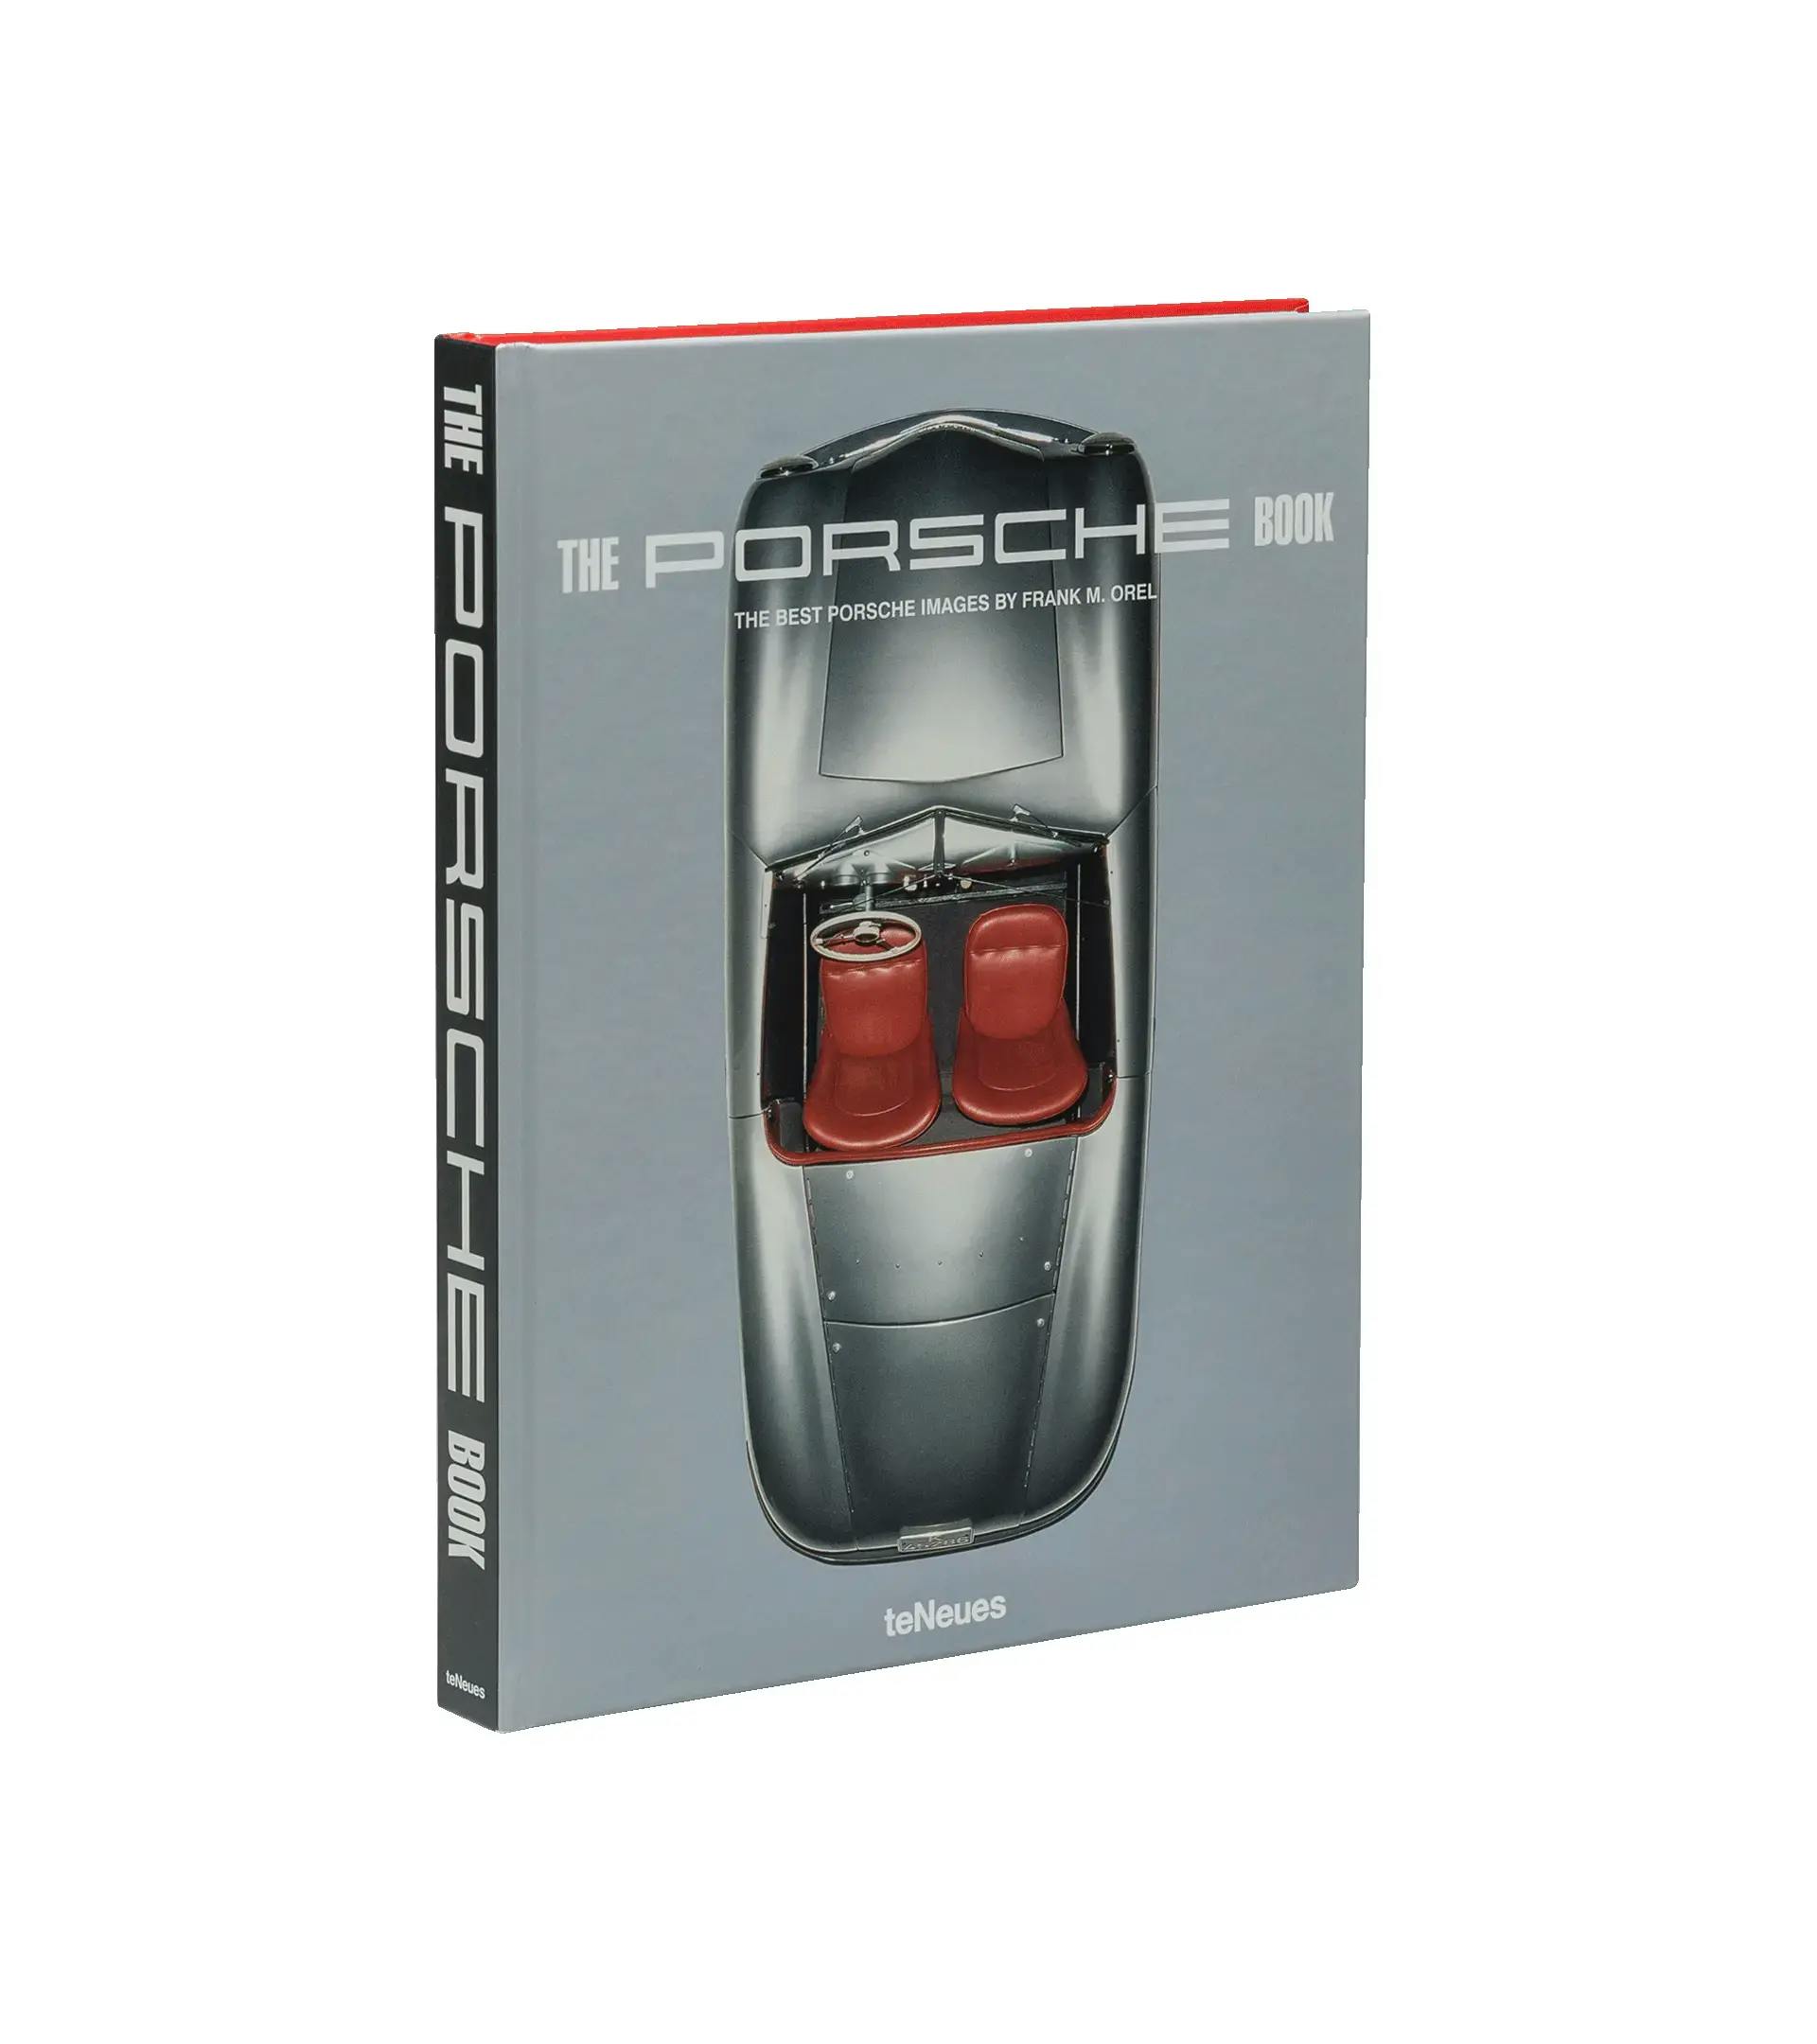 The Porsche Book - Les meilleures images de Porsche par Frank M. Orel 1